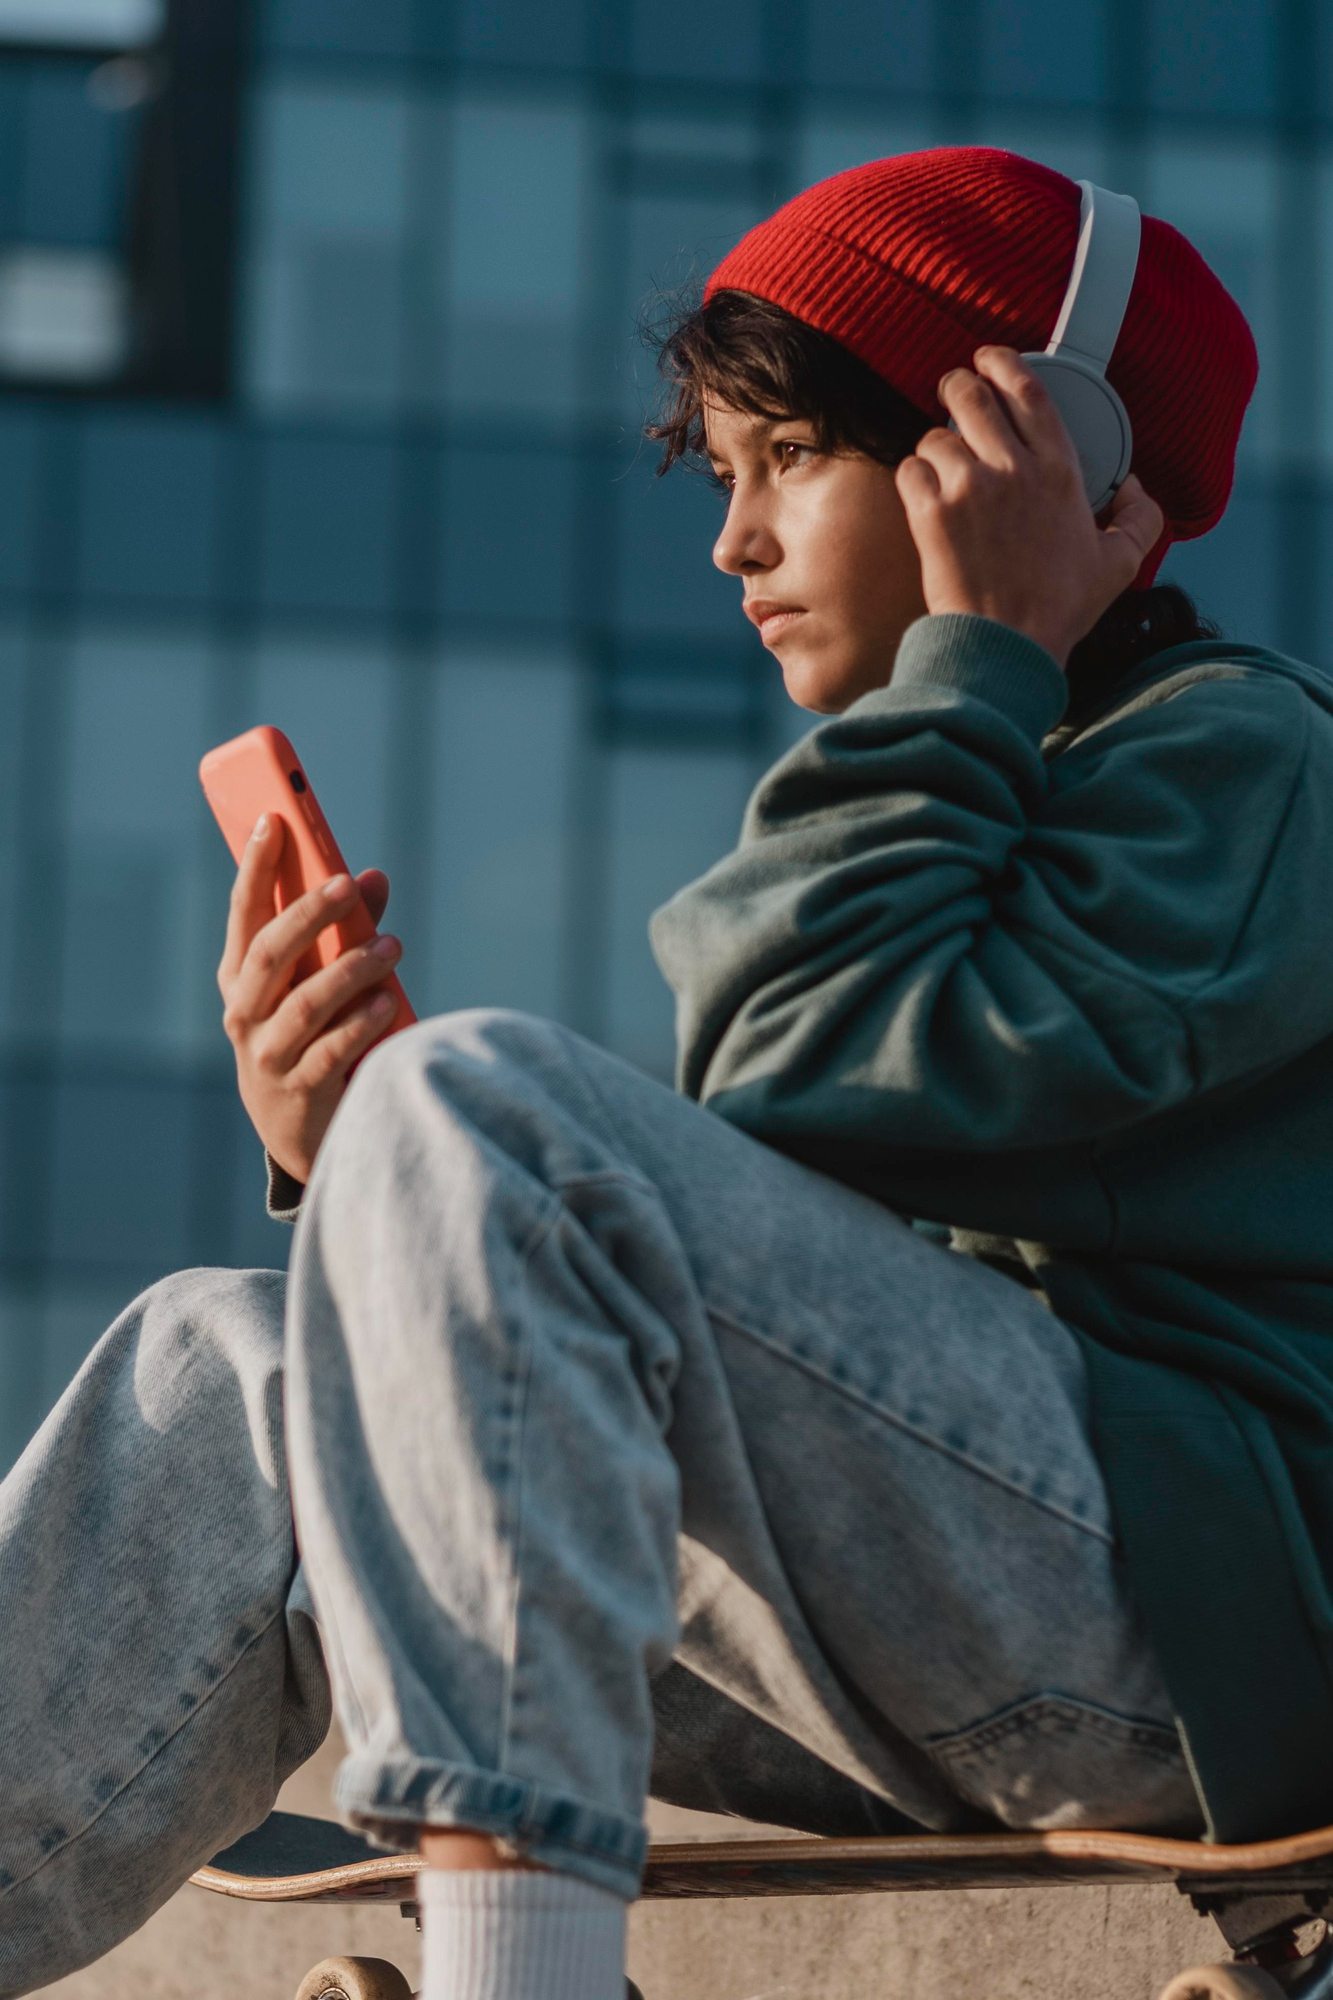 Un jeune garçon écoutant quelque chose sur ses écouteurs tout en tenant un téléphone | Source : Freepik